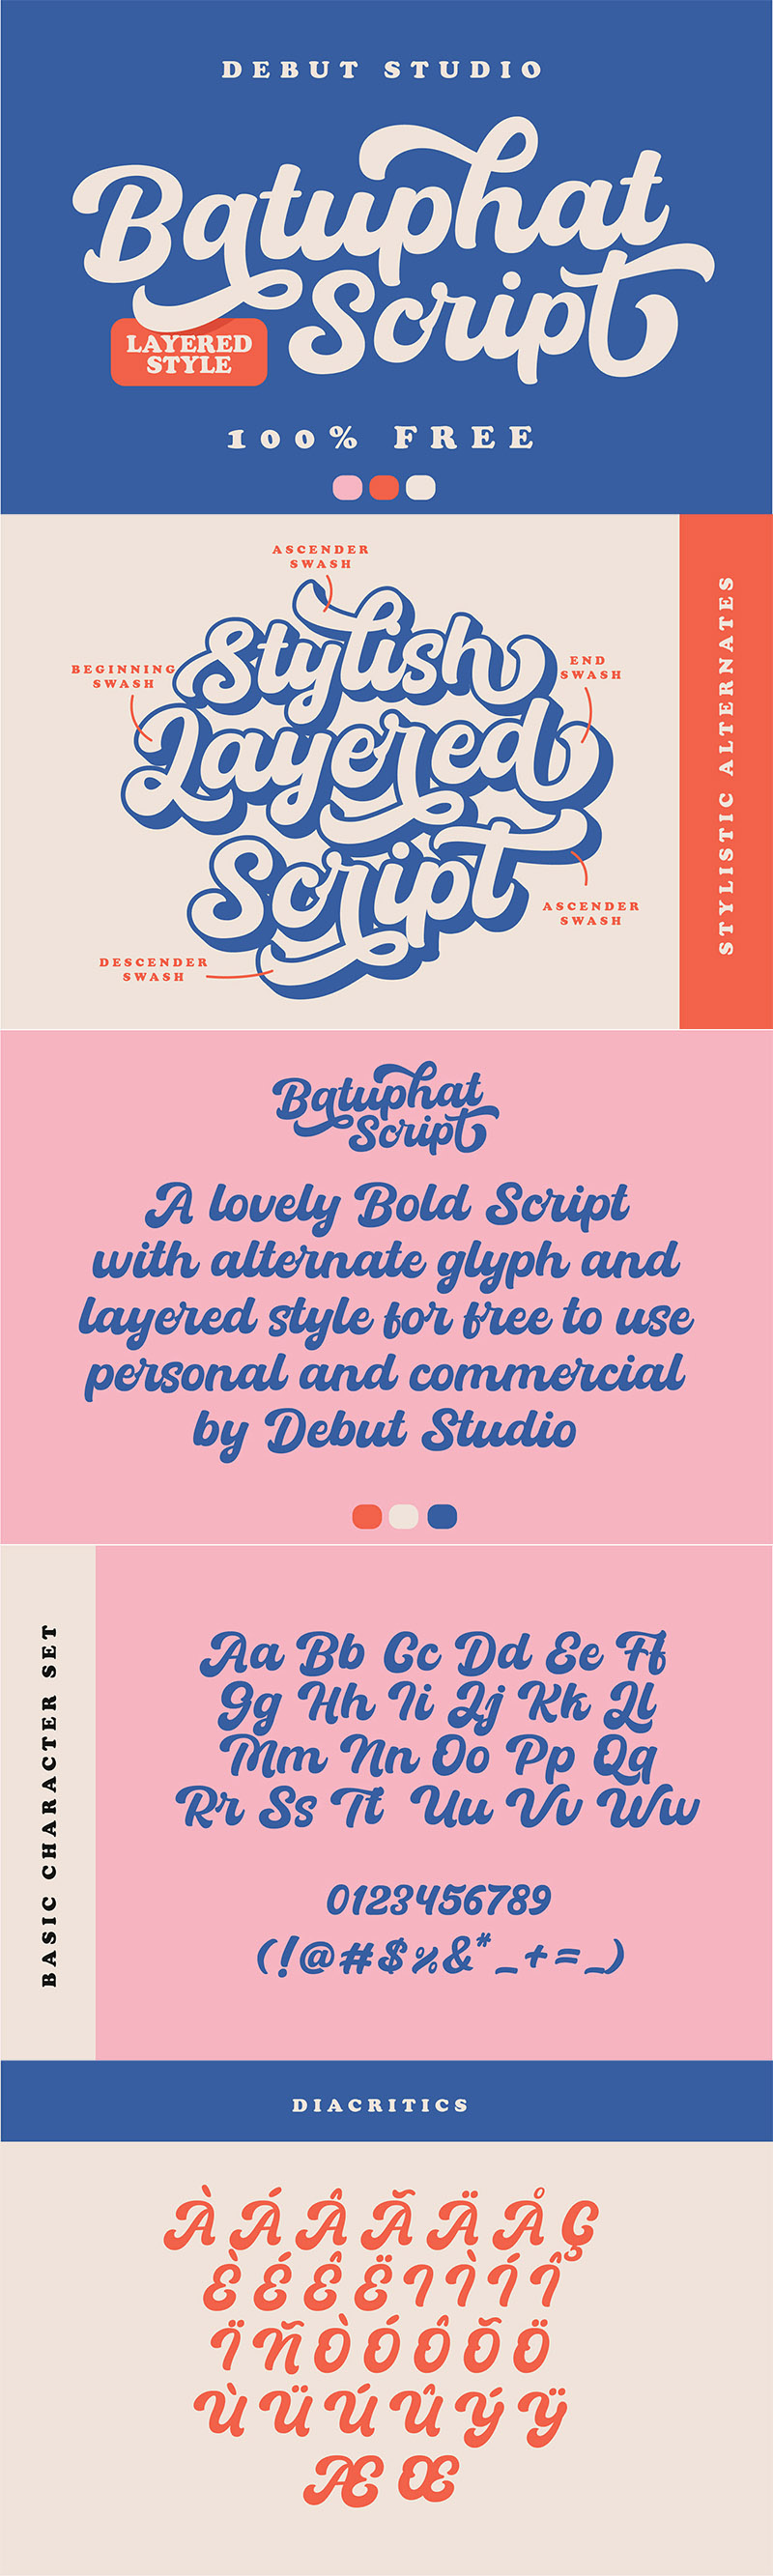 Batuphat Script - Free Curvy Script Font